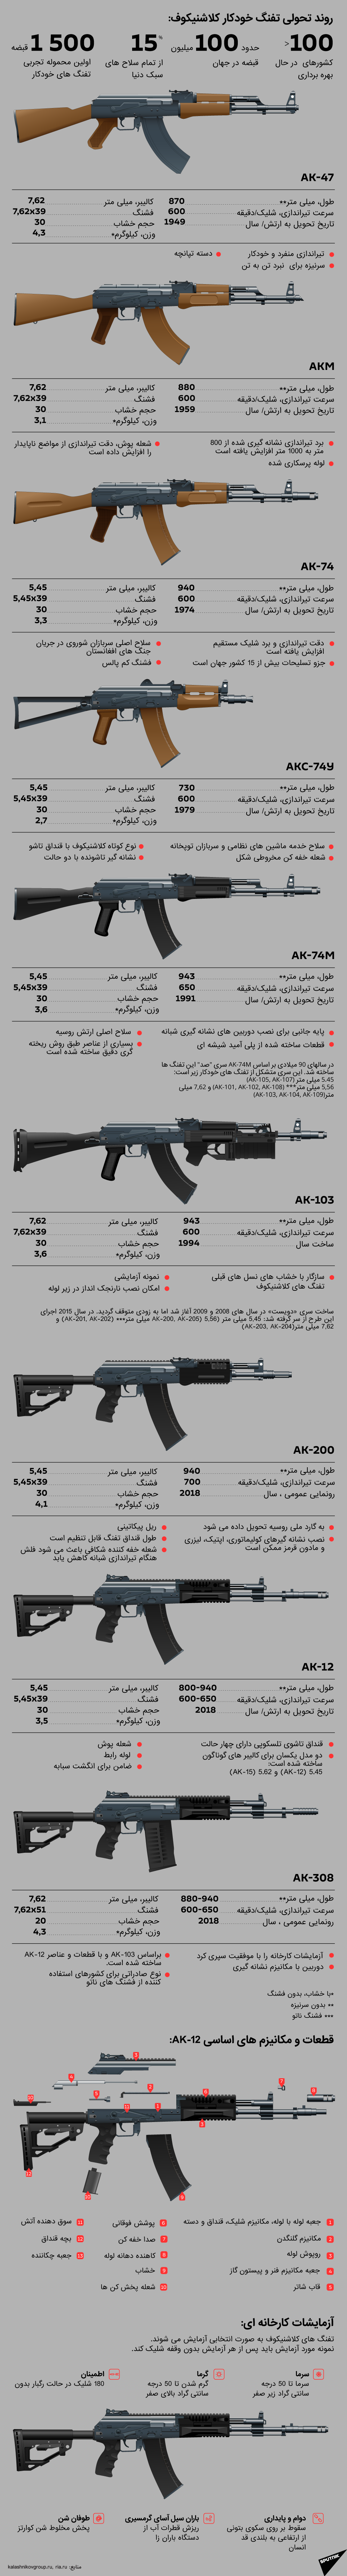 تفنگ خودکار کلاشنیکوف : اطمینان، سادگی و قدرت - اسپوتنیک افغانستان  